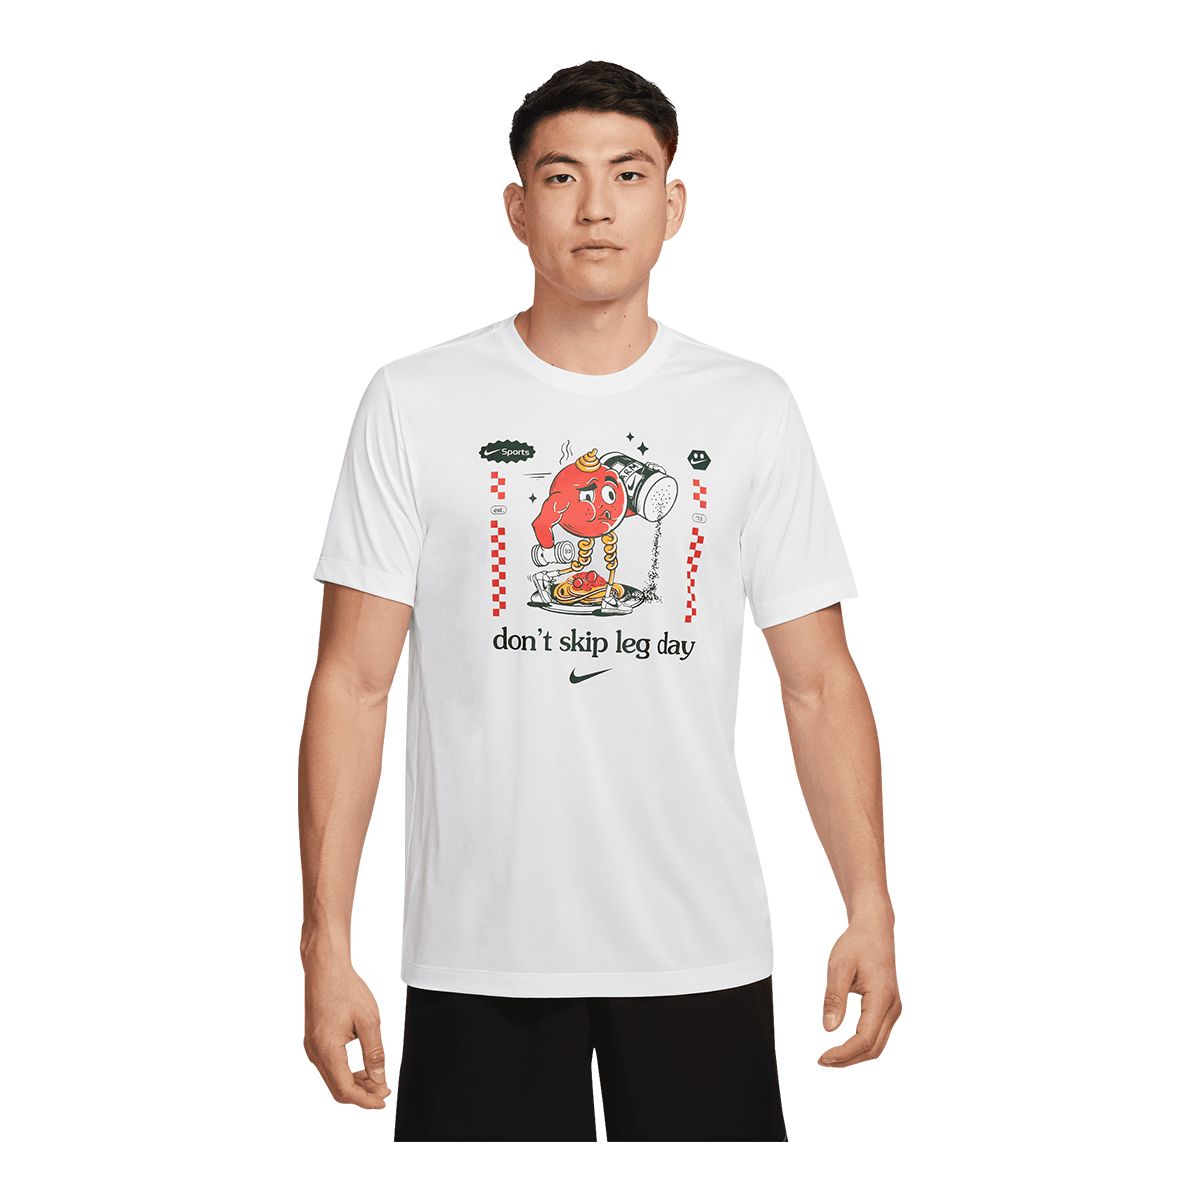 Nike Pro Men's Dri-FIT Slim T Shirt